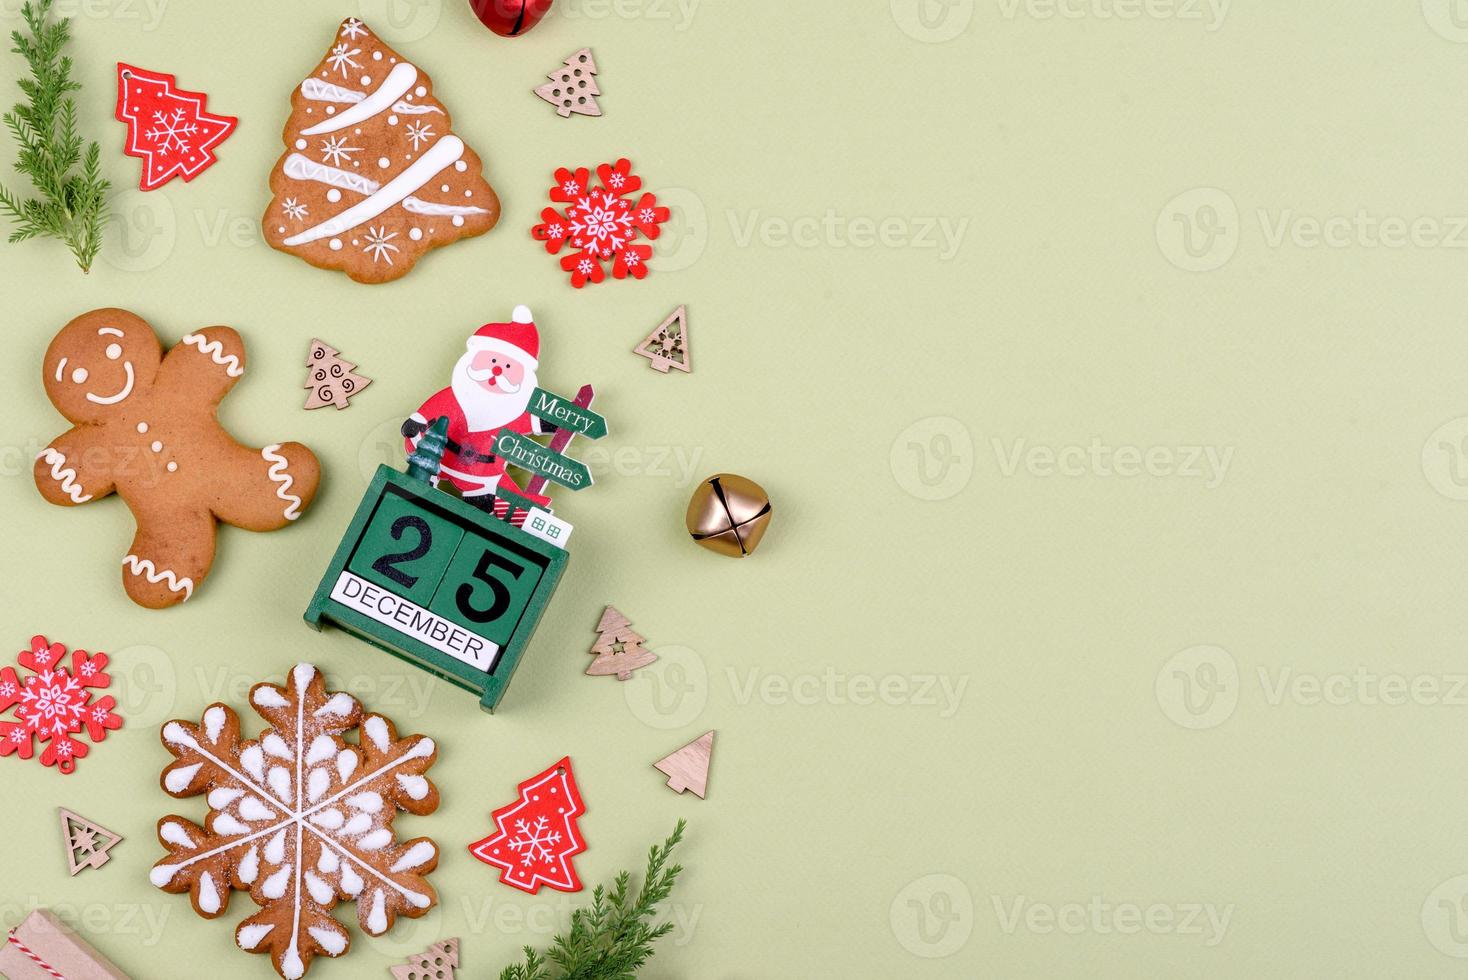 Pan di zenzero festivo natalizio fatto in casa su uno sfondo colorato foto